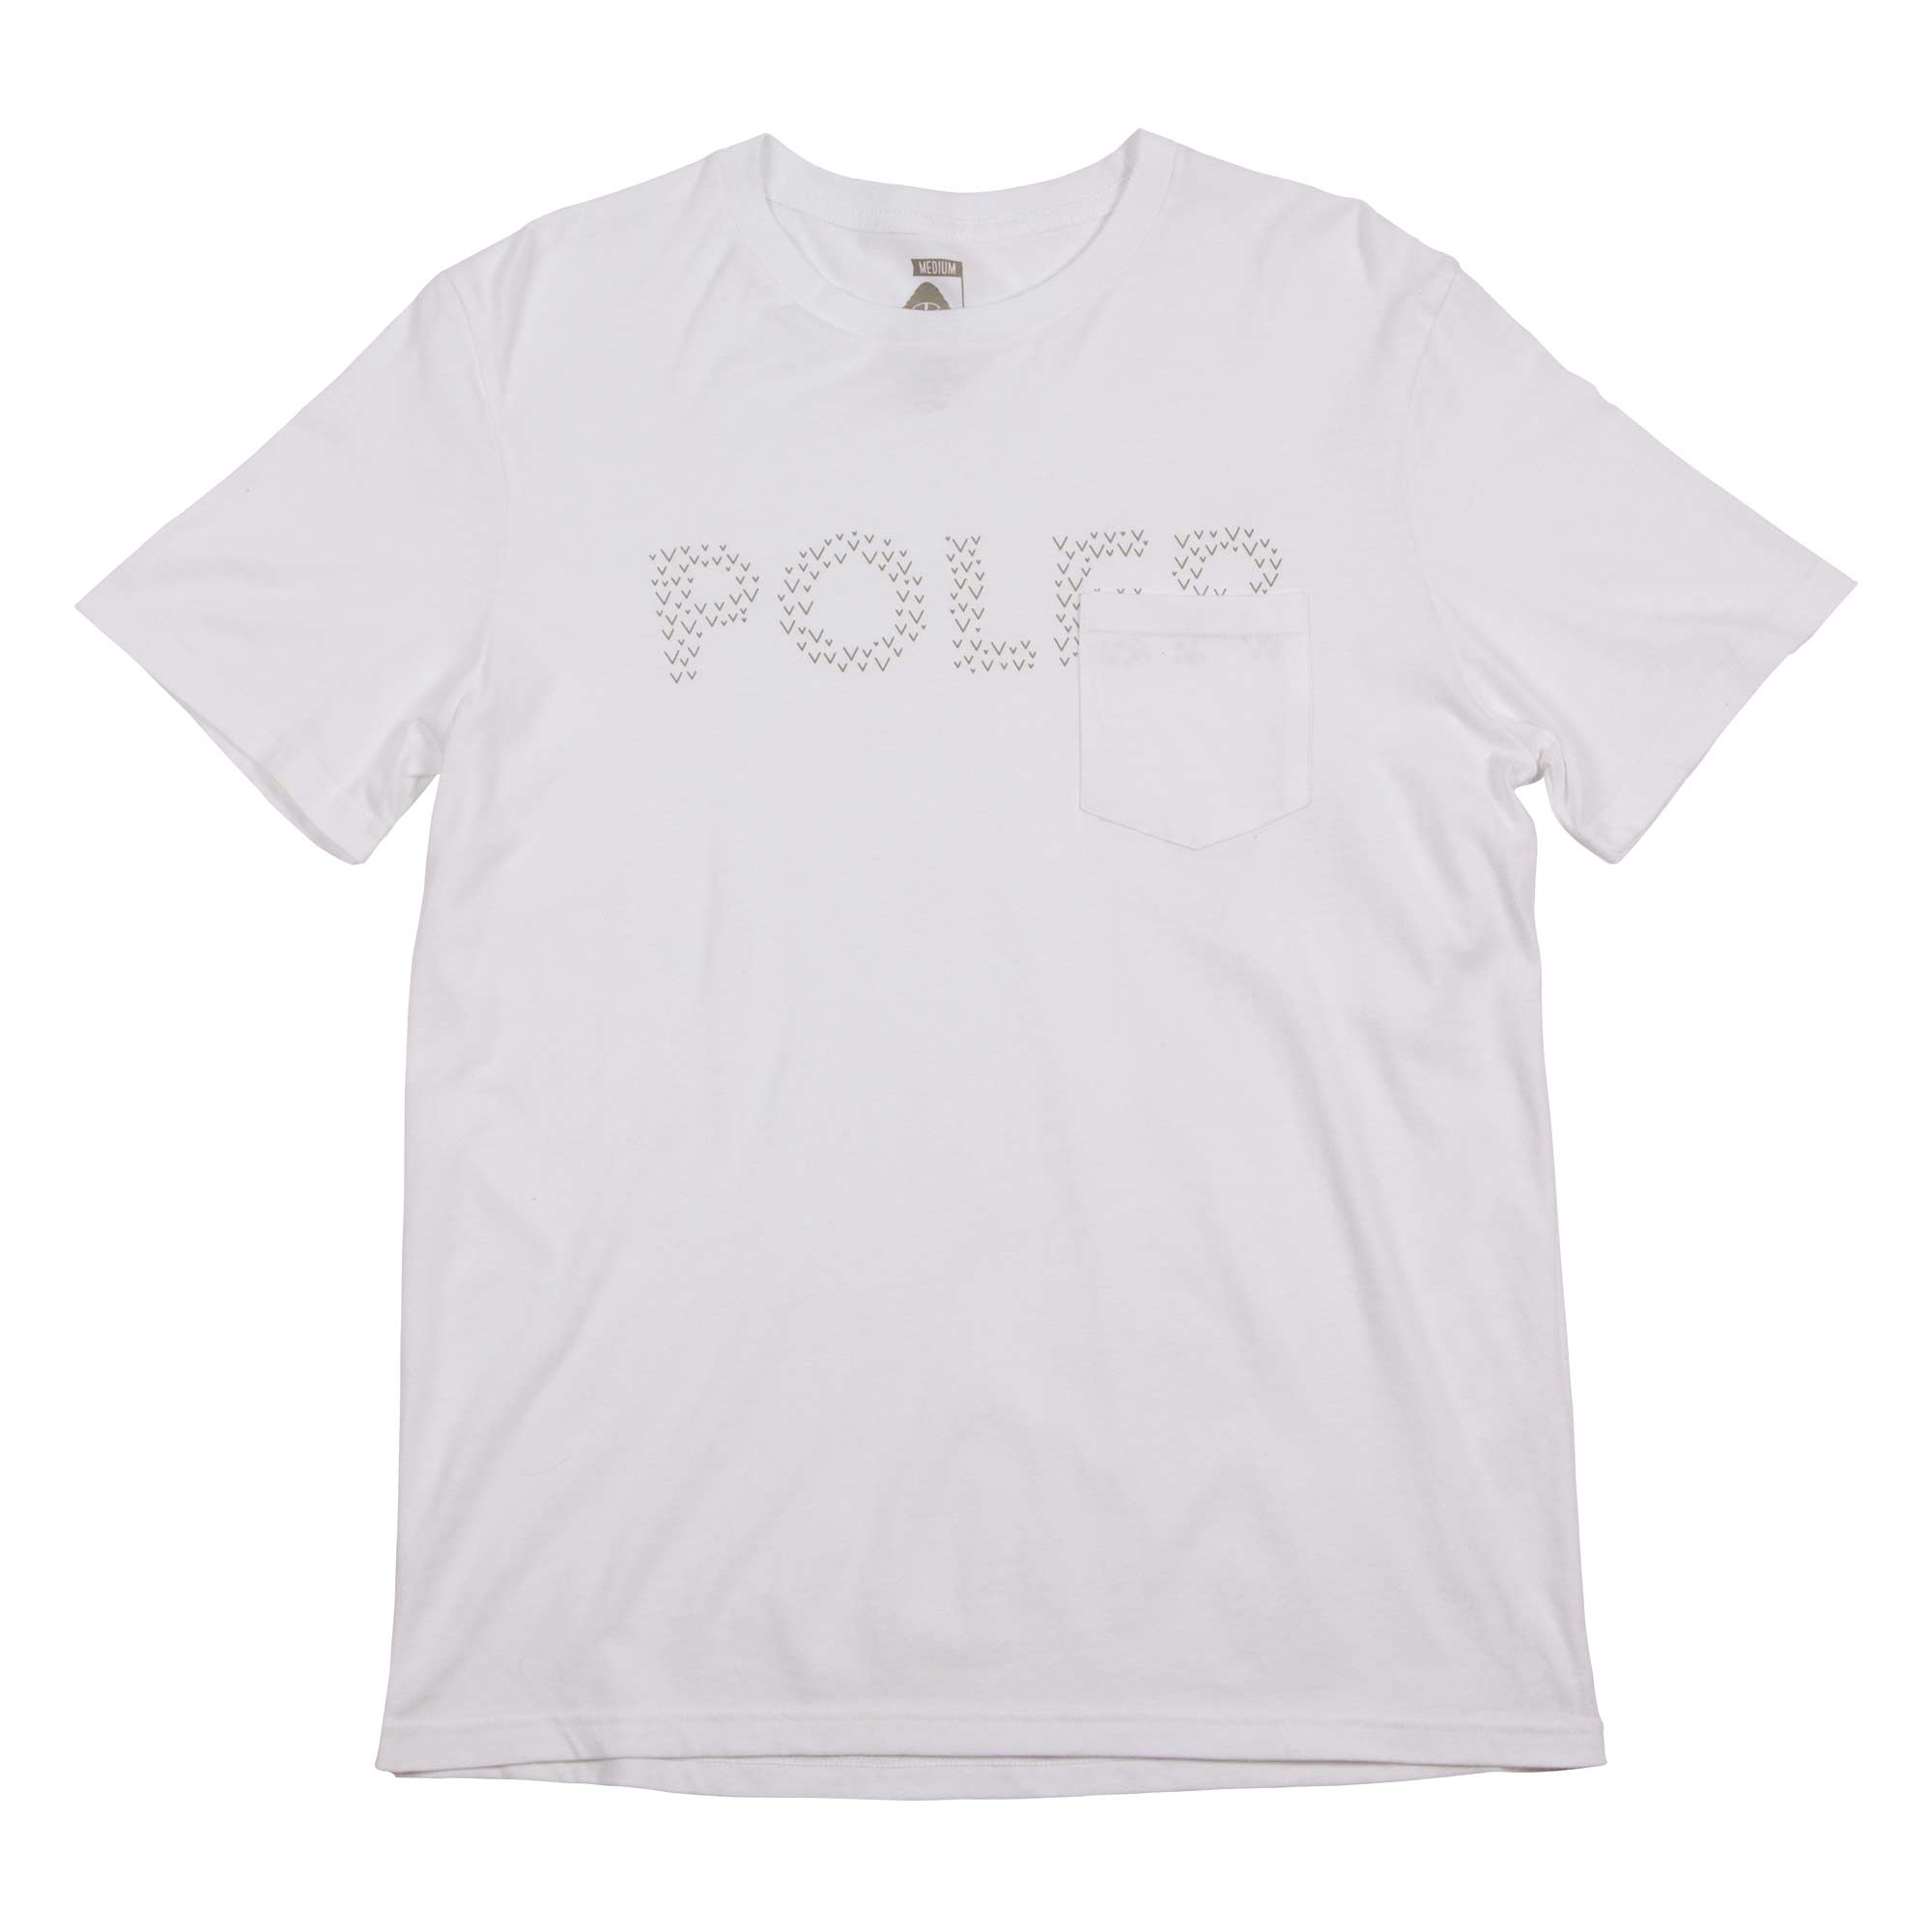 POLER T-Shirt TRACKS POCKET TEE, white